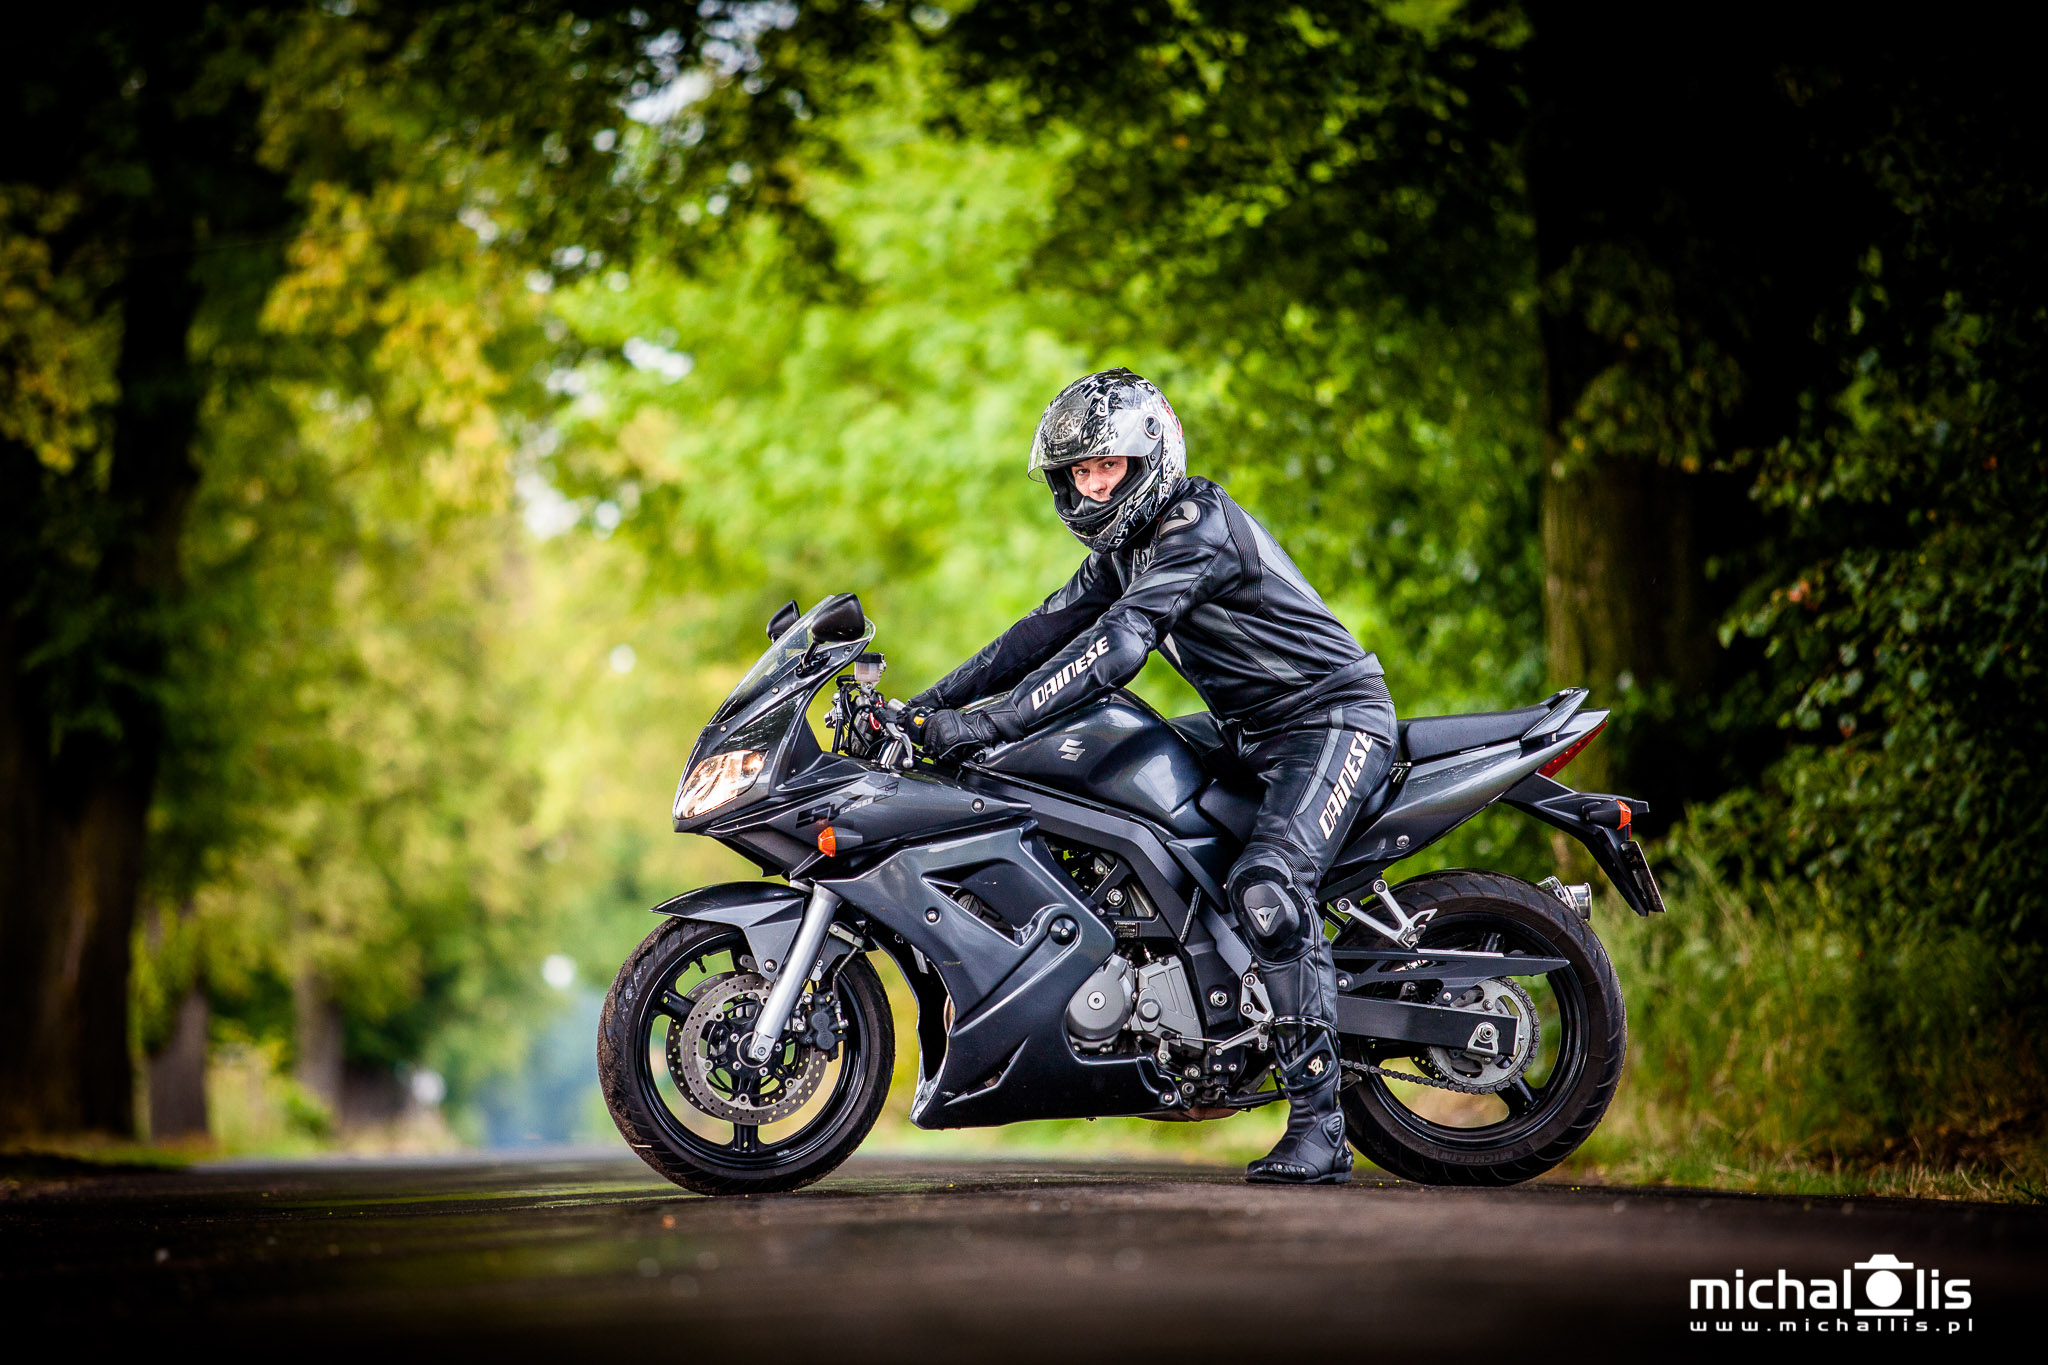 Zdjęcia na motorze - portret na motocyklu